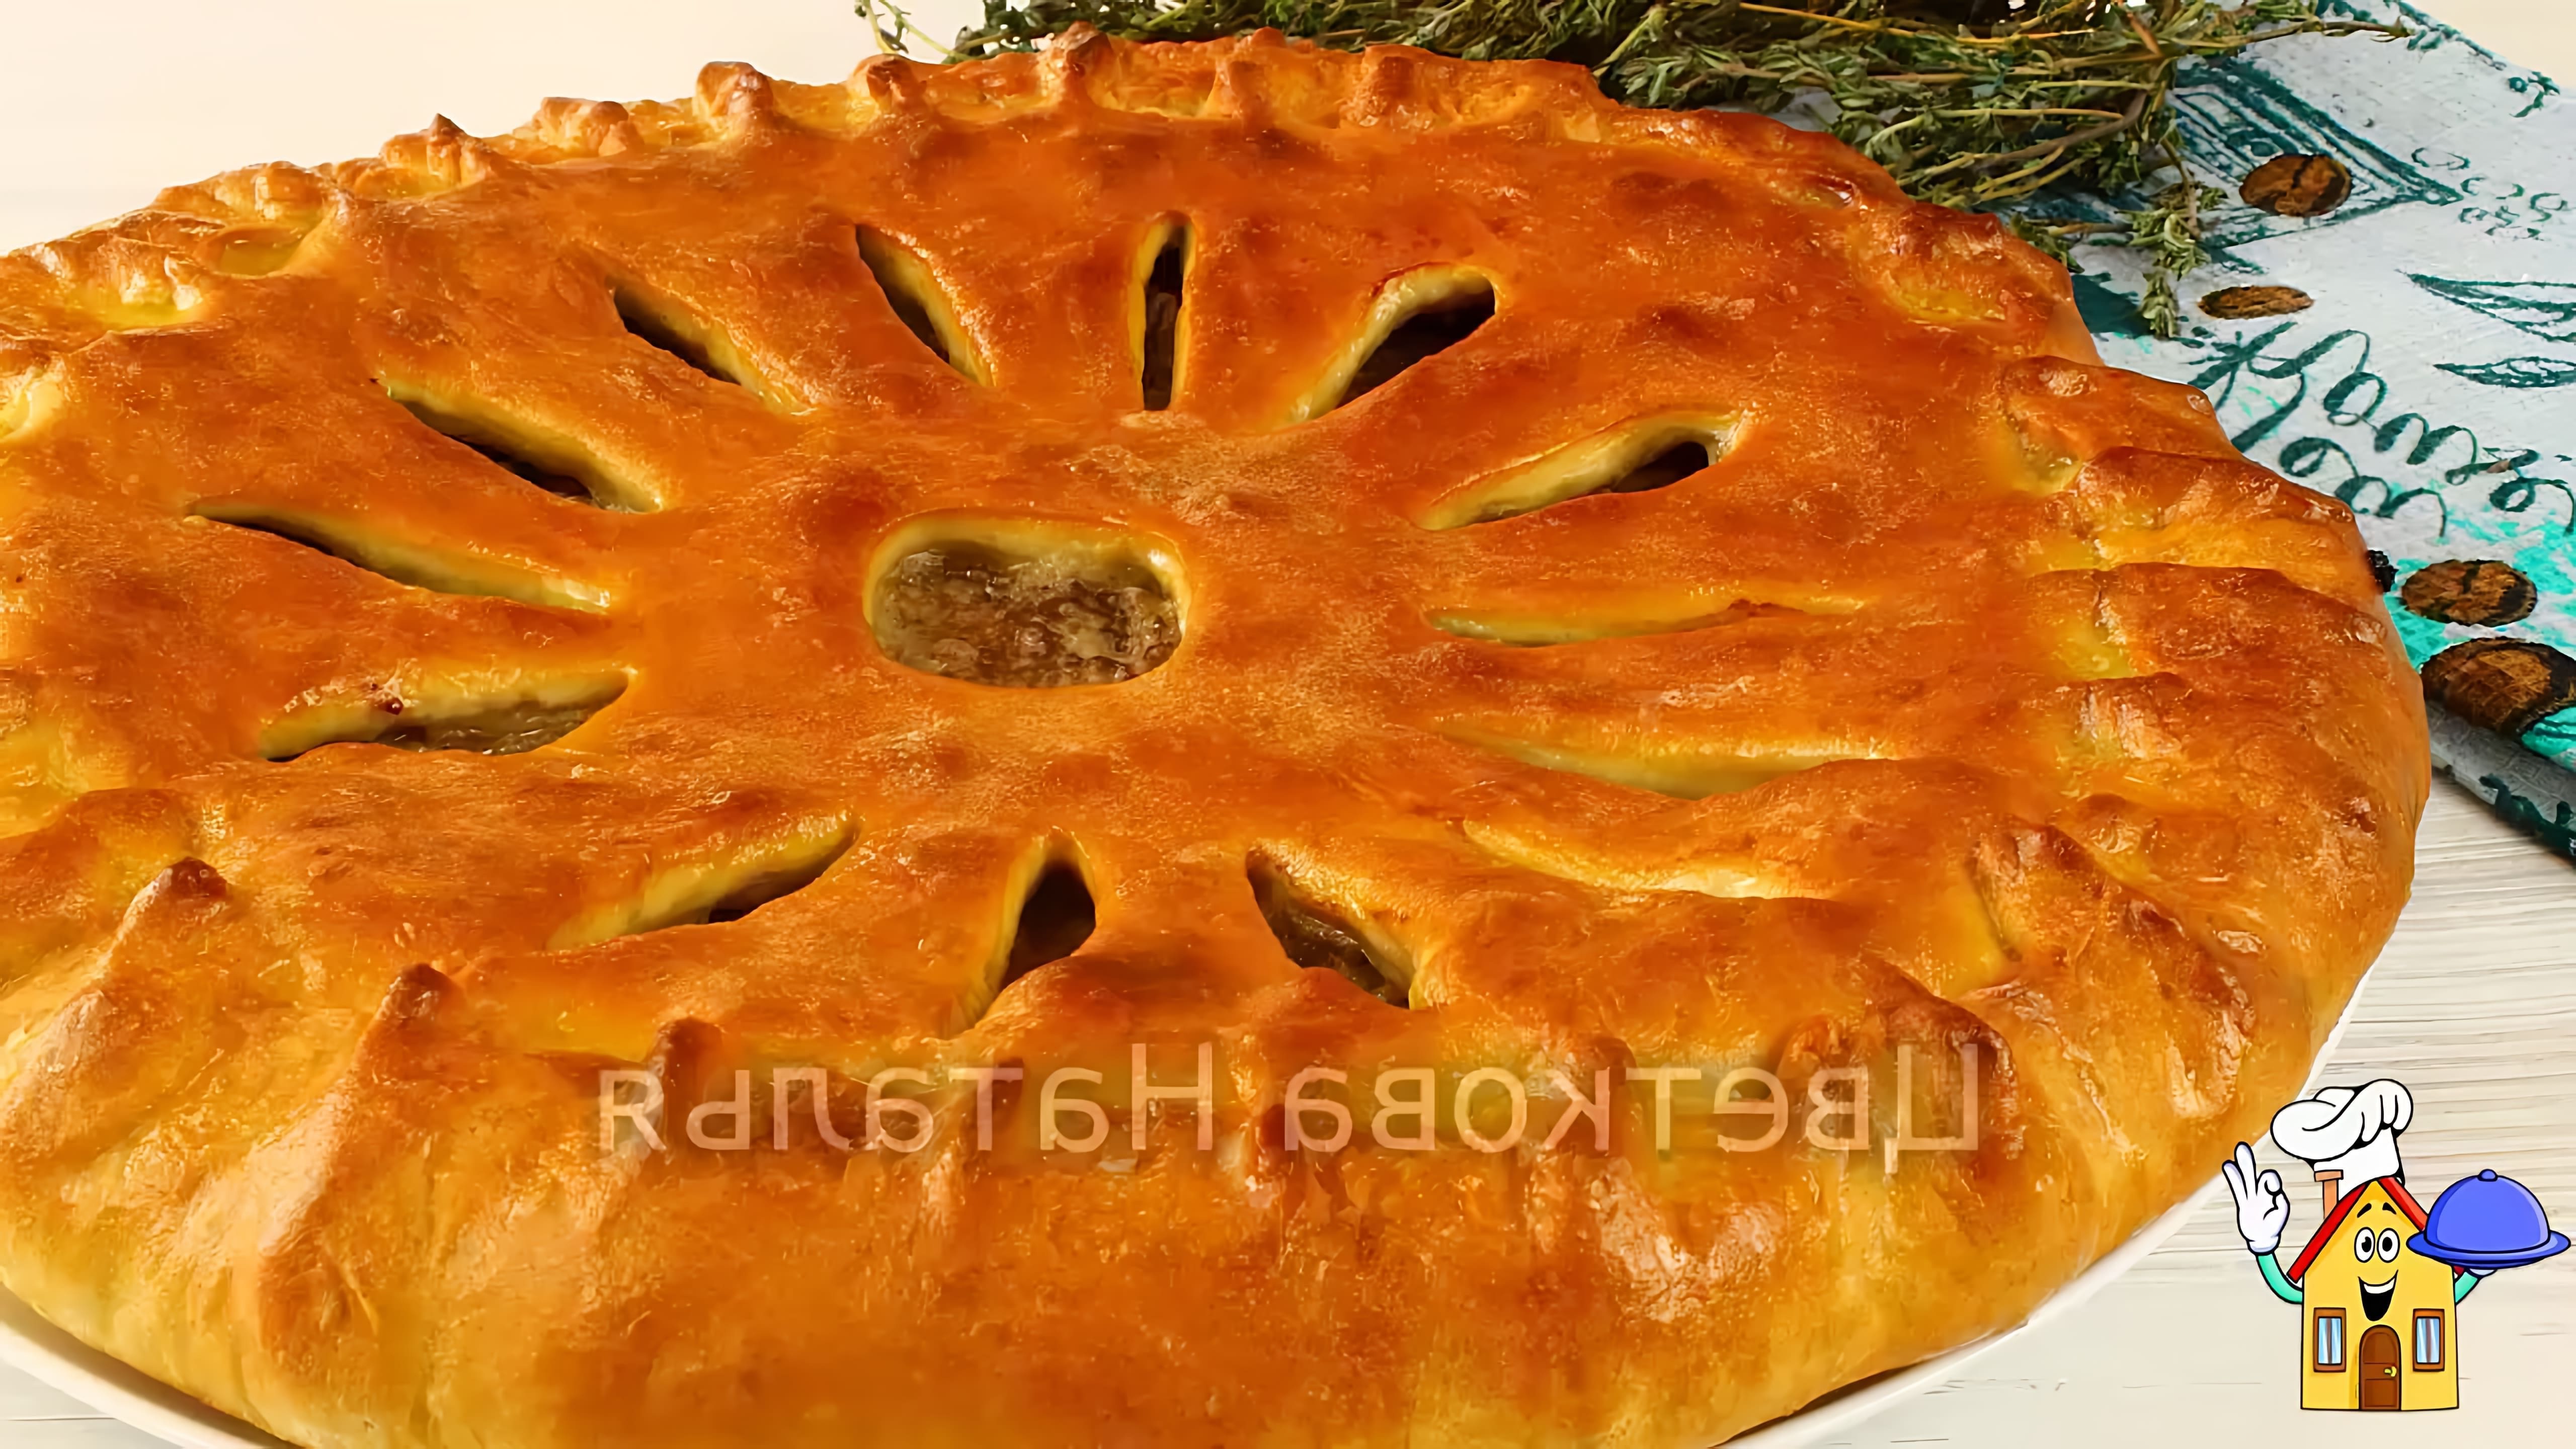 В этом видео демонстрируется процесс приготовления осетинского пирога с мясом